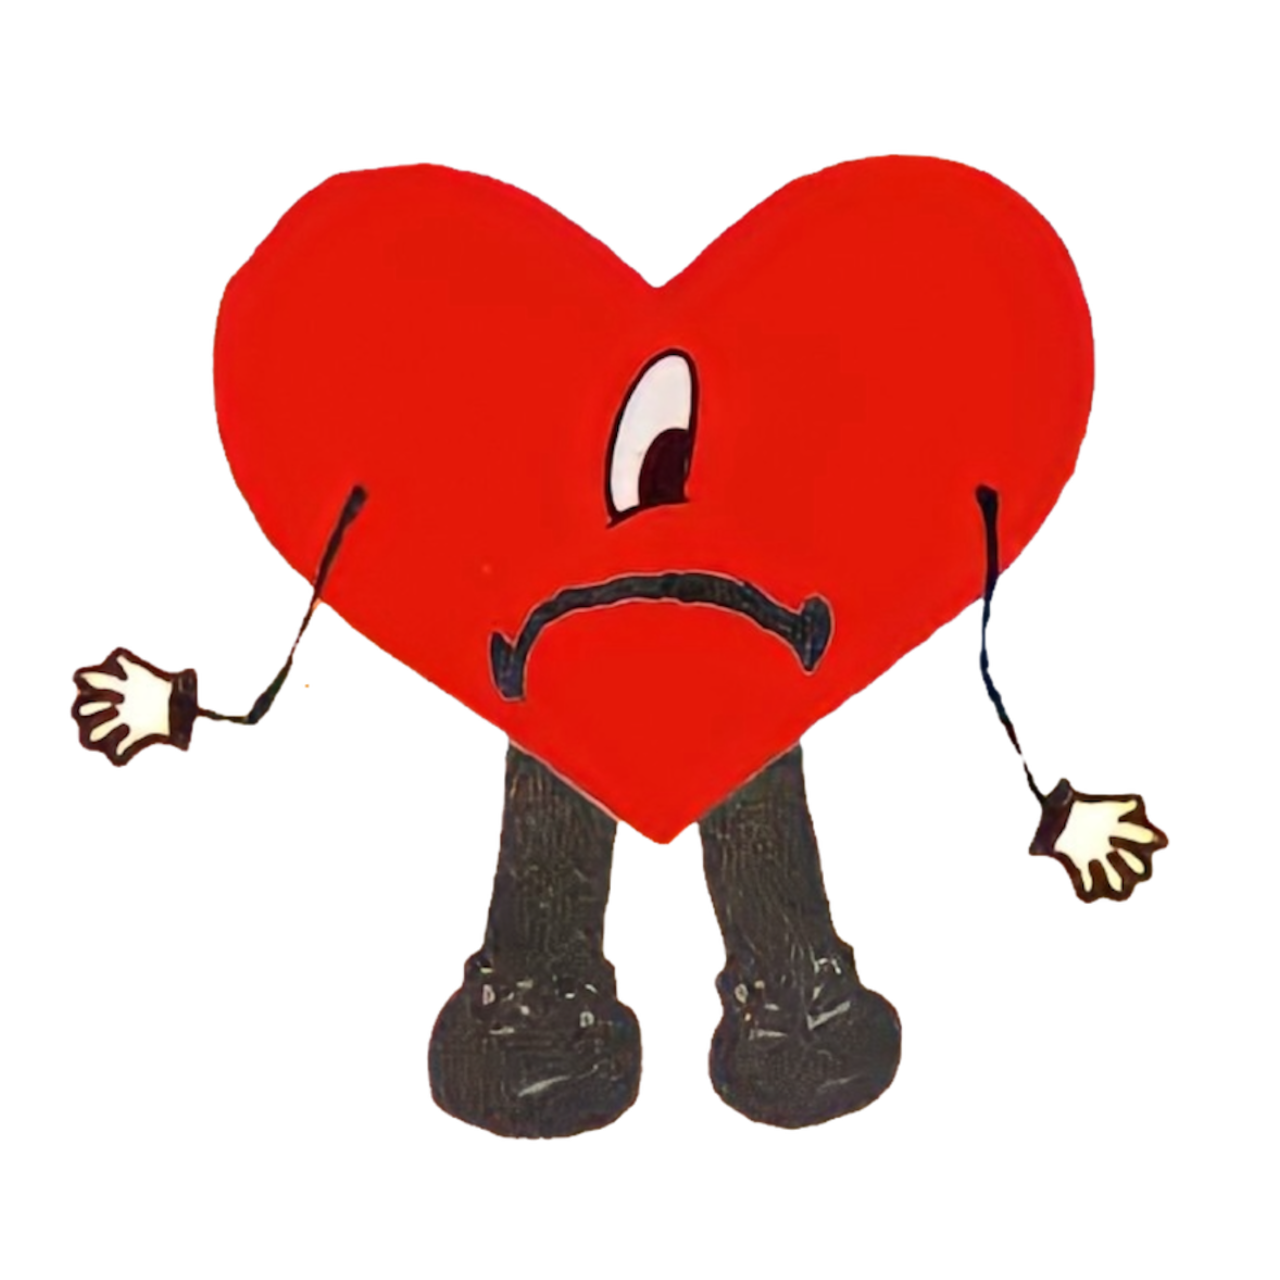 Heart Broken – heartbrokenshop